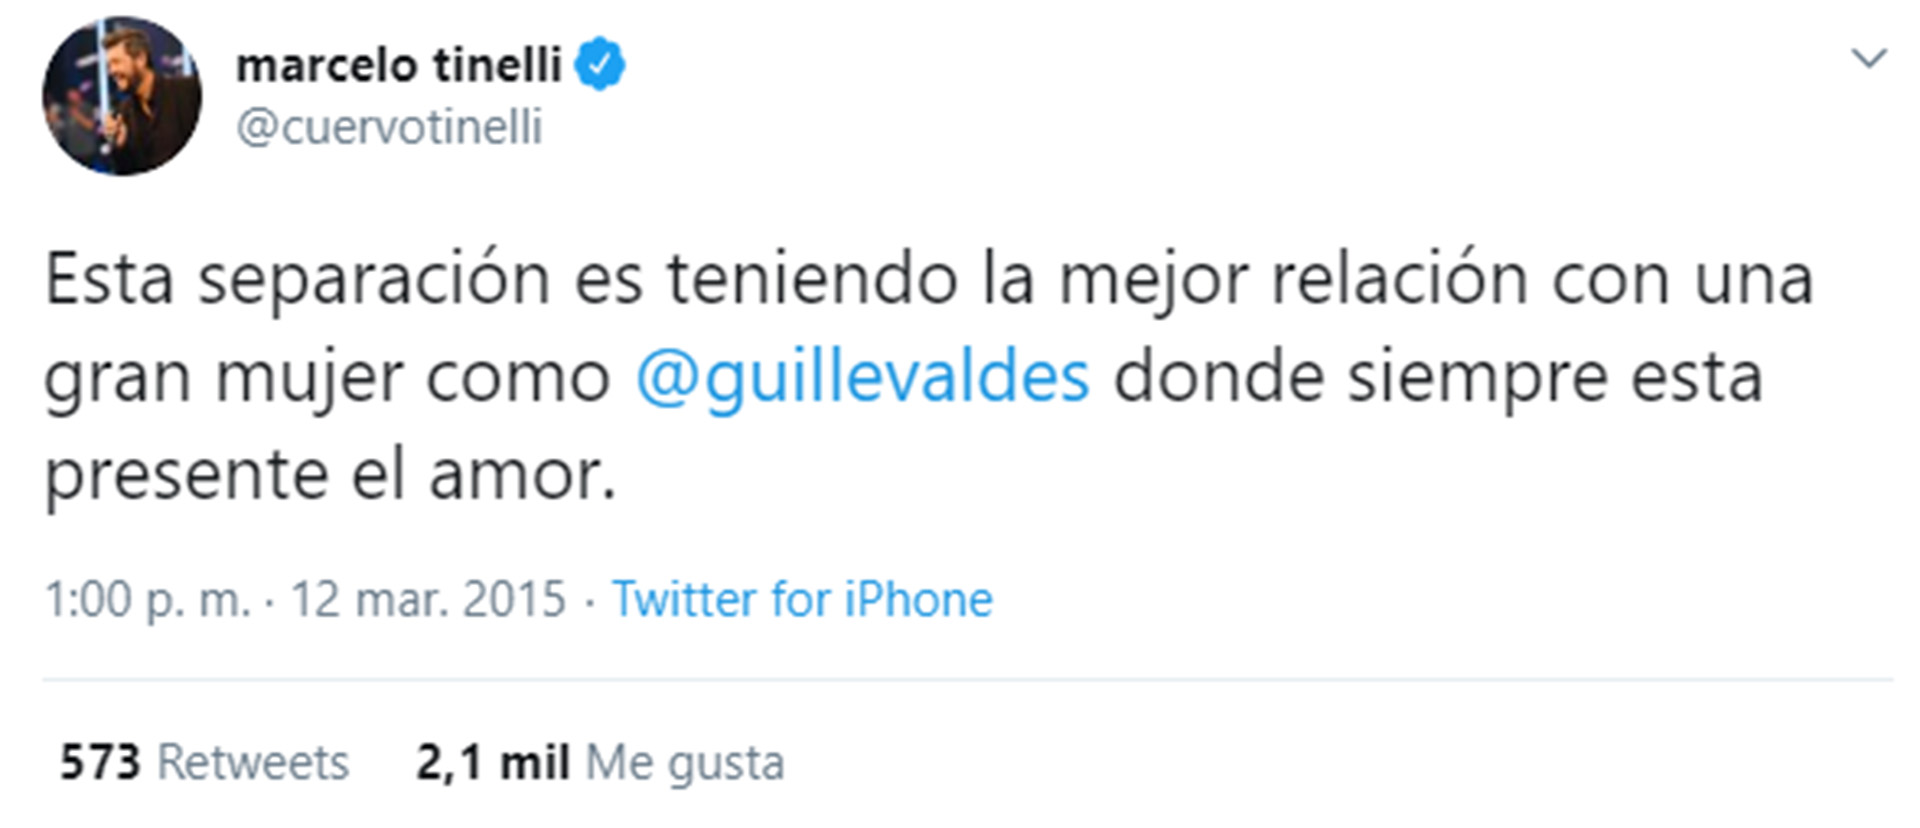 El tuit de Marcelo Tinelli en 2015, cuando se refería a la "momentánea" separación de Guillermina Valdés